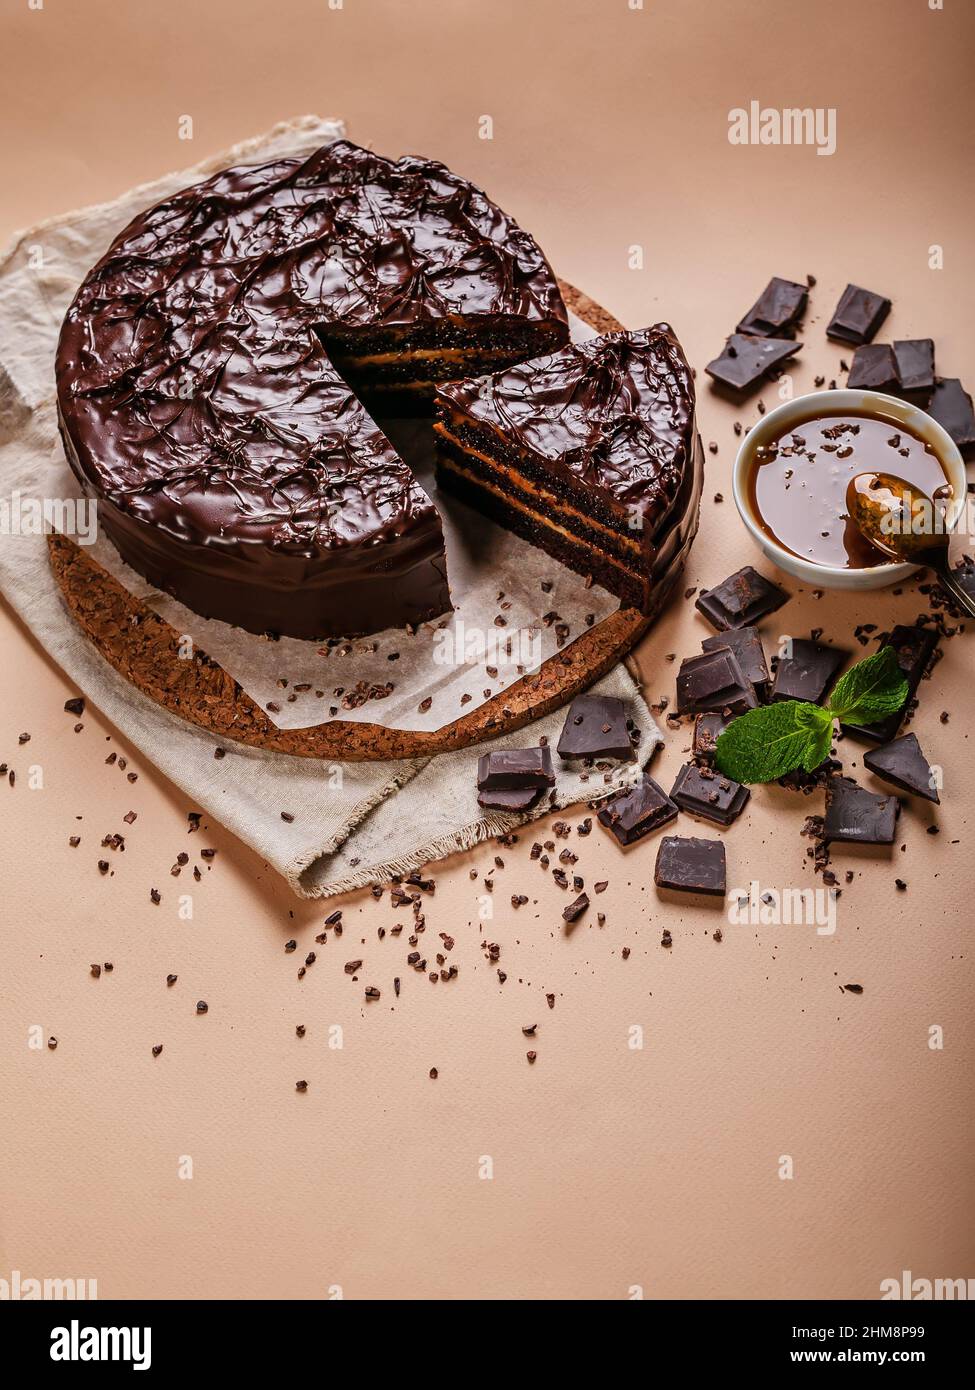 Schokoladenkuchen mit gesalzenem Karamell auf beigefarbenem Hintergrund. Hausgemachtes, köstliches Gebäck. Vertikale Aufnahme. Süßes Dessert. Speicherplatz kopieren Stockfoto